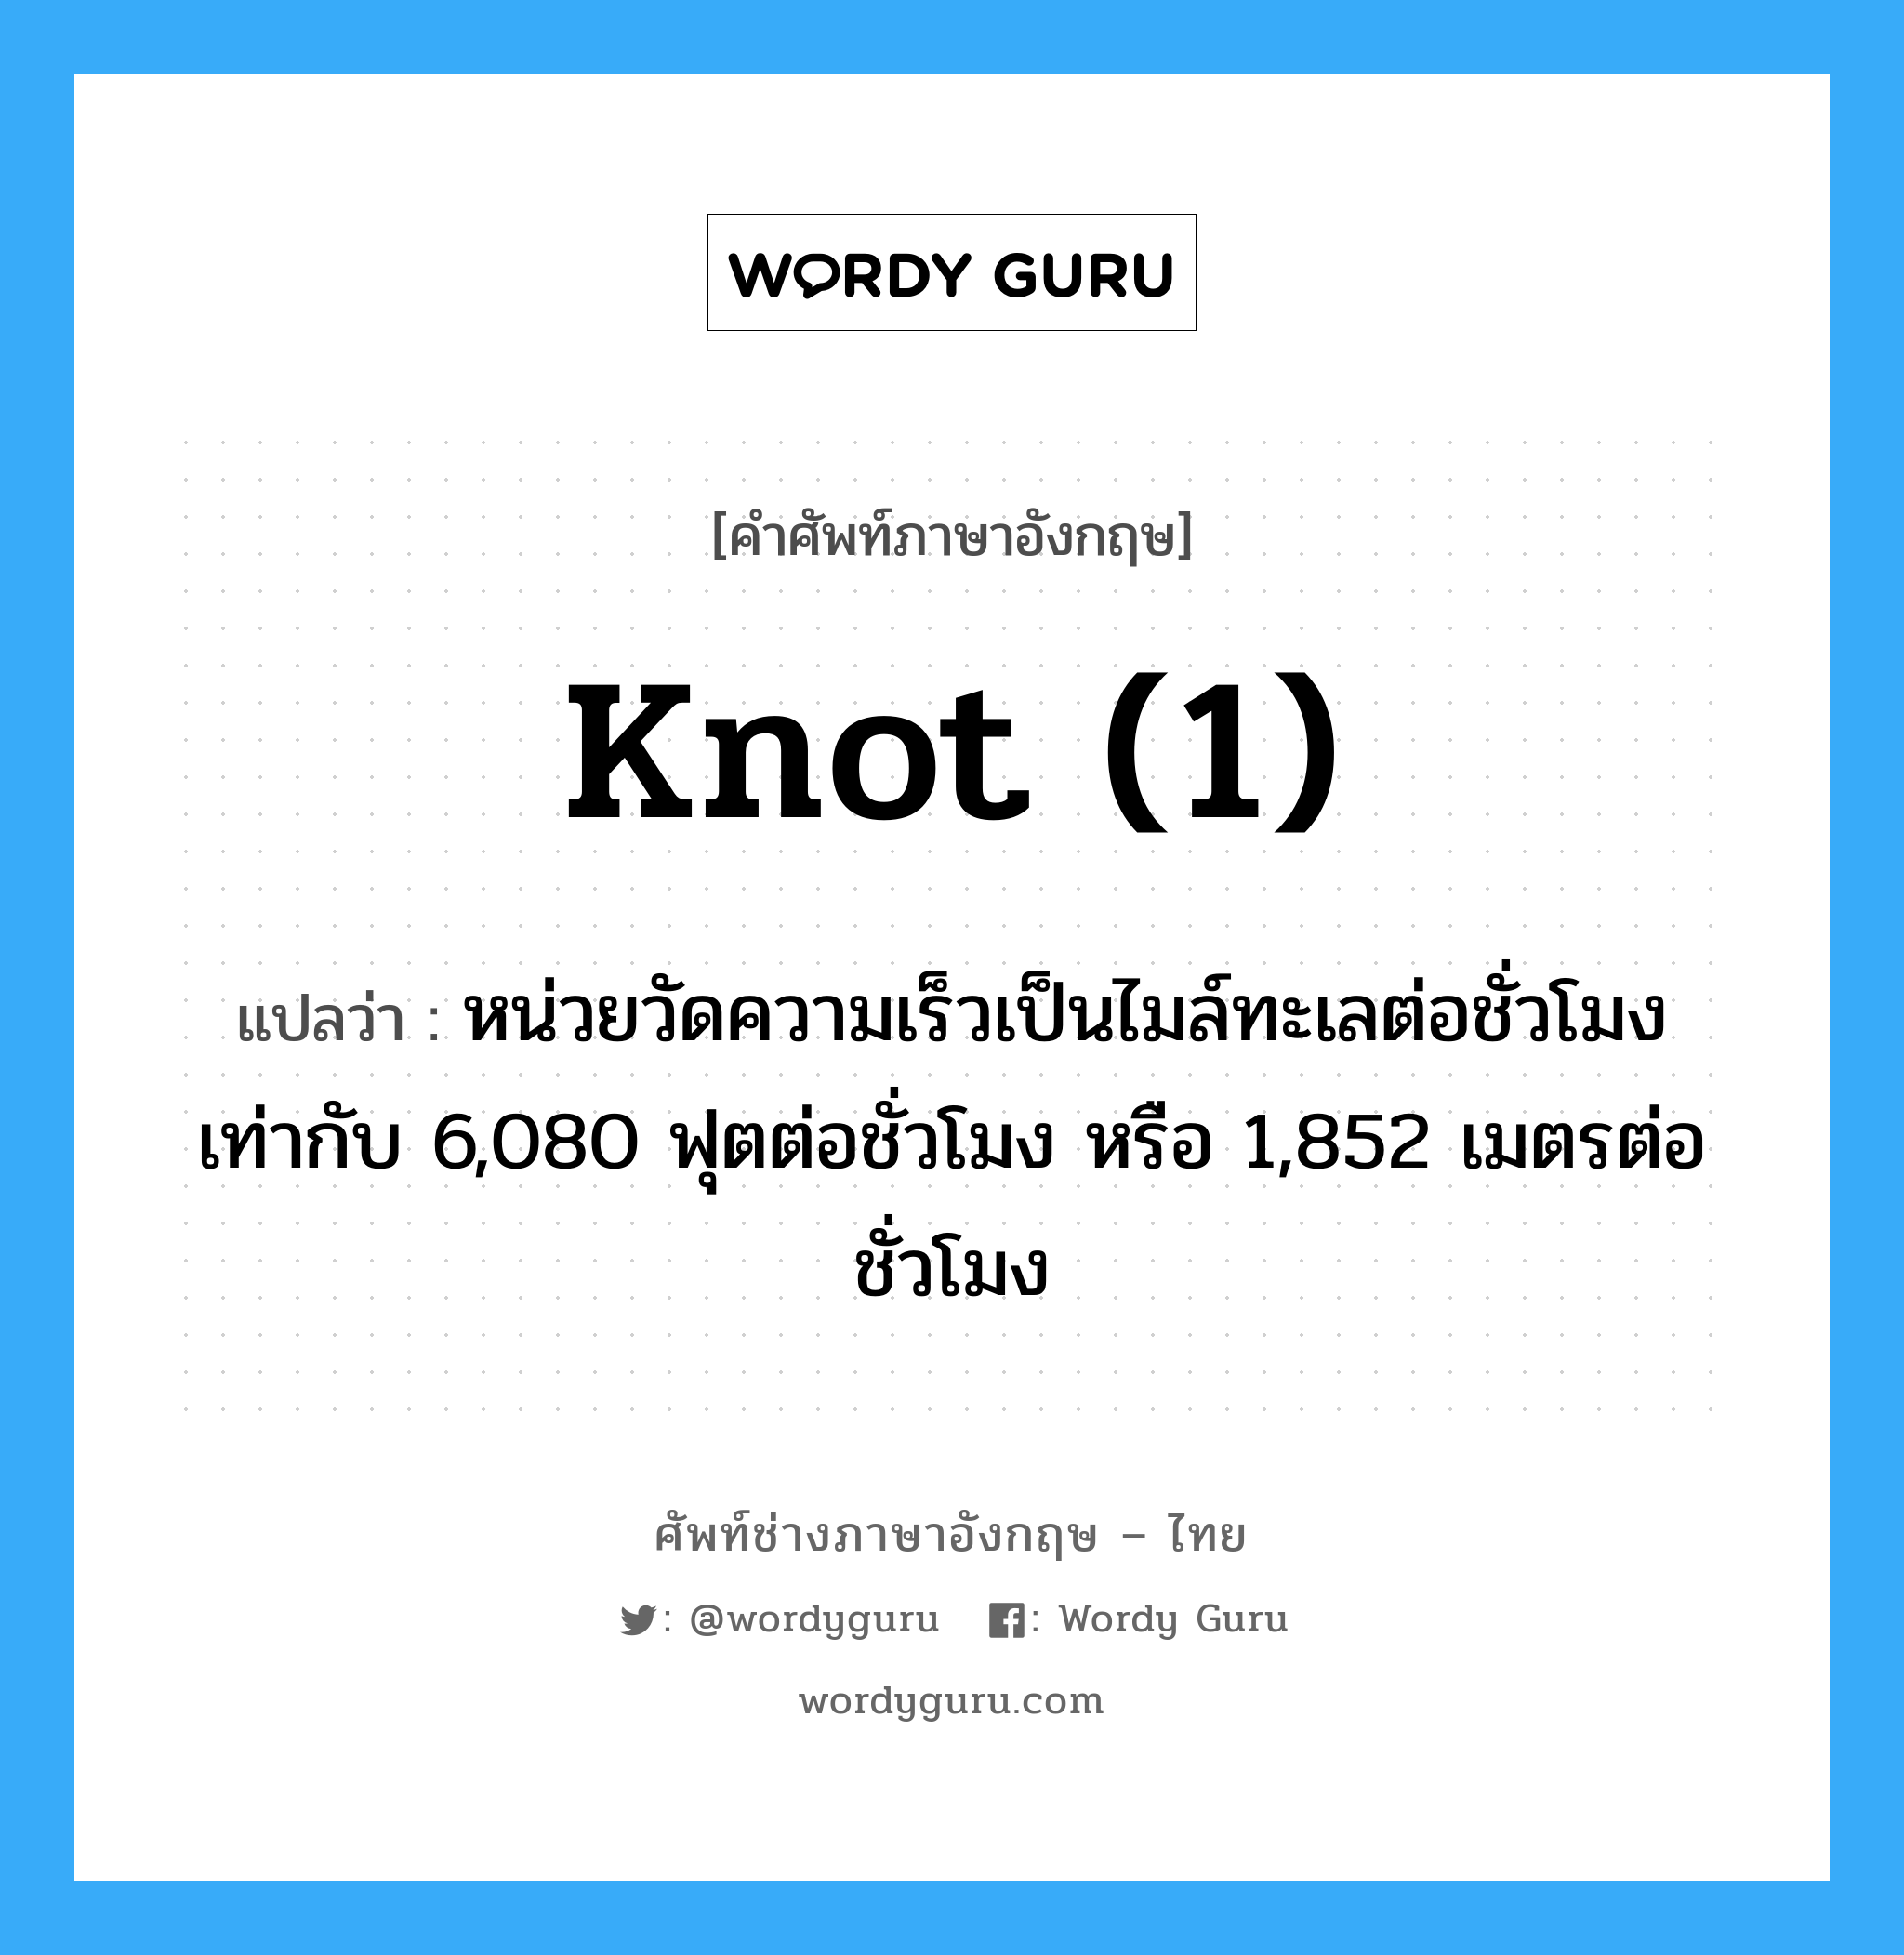 knot (1) แปลว่า?, คำศัพท์ช่างภาษาอังกฤษ - ไทย knot (1) คำศัพท์ภาษาอังกฤษ knot (1) แปลว่า หน่วยวัดความเร็วเป็นไมล์ทะเลต่อชั่วโมง เท่ากับ 6,080 ฟุตต่อชั่วโมง หรือ 1,852 เมตรต่อชั่วโมง